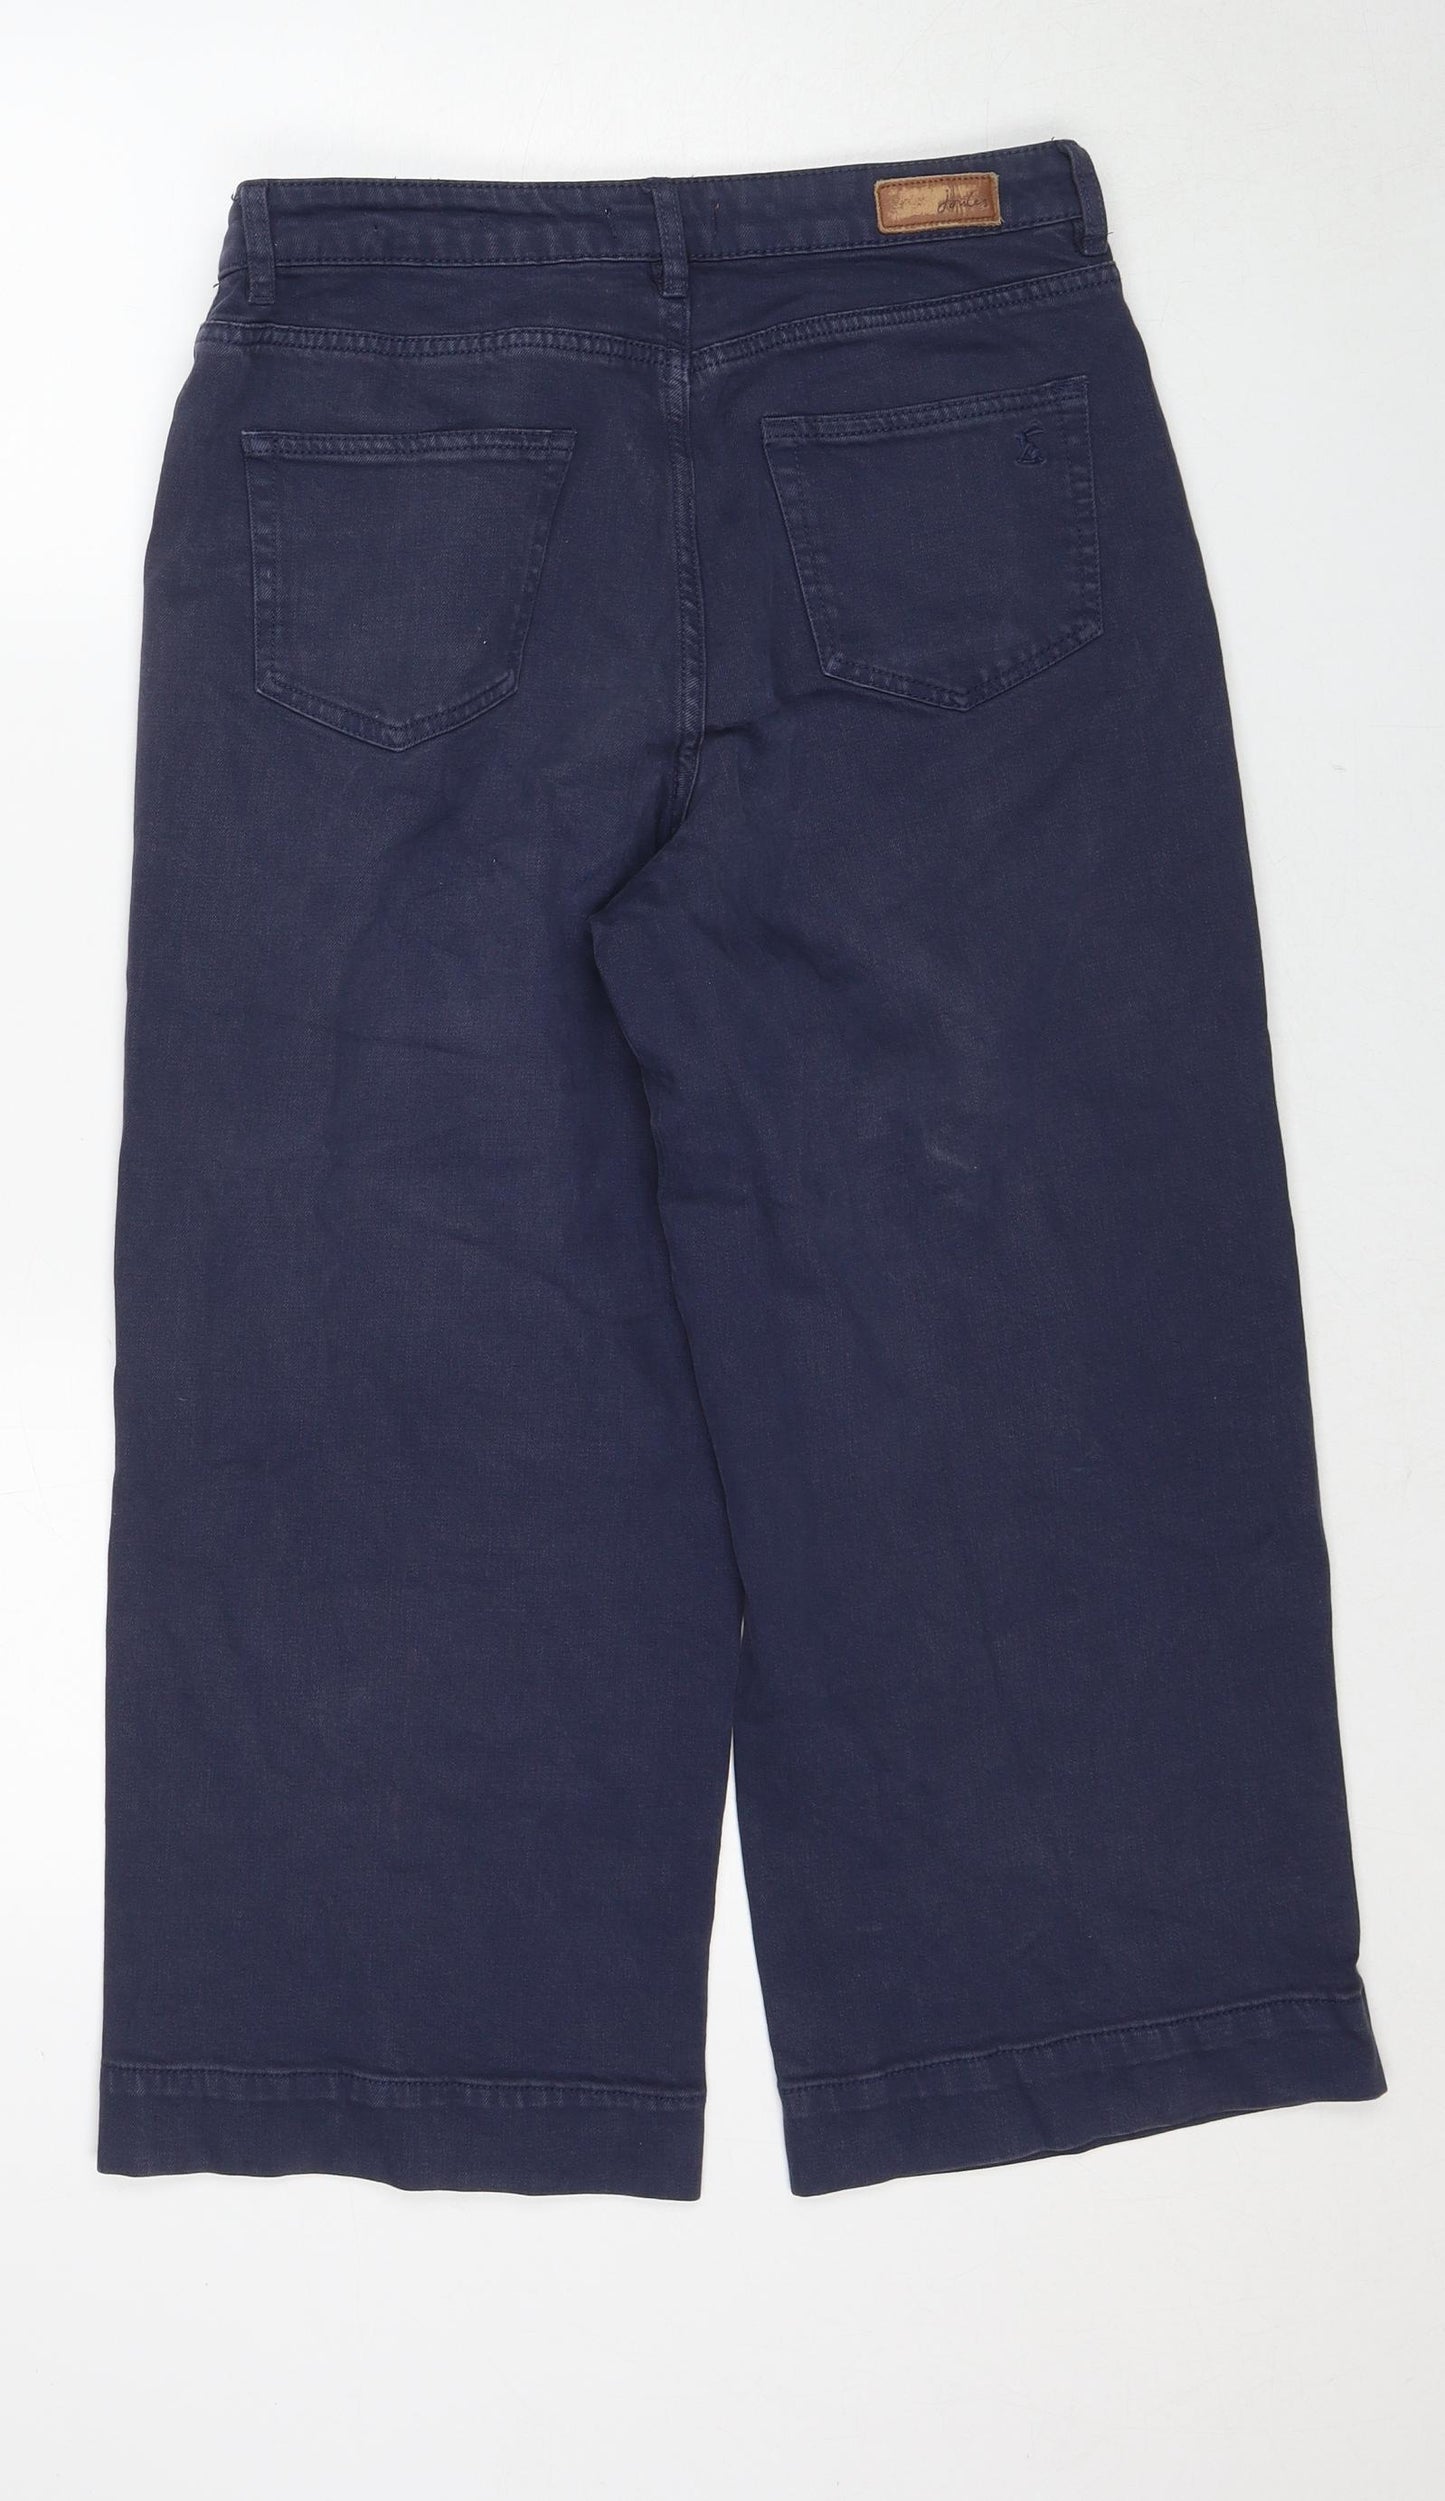 Joules Womens Blue Cotton Wide-Leg Jeans Size 12 Regular Zip - Crop Leg